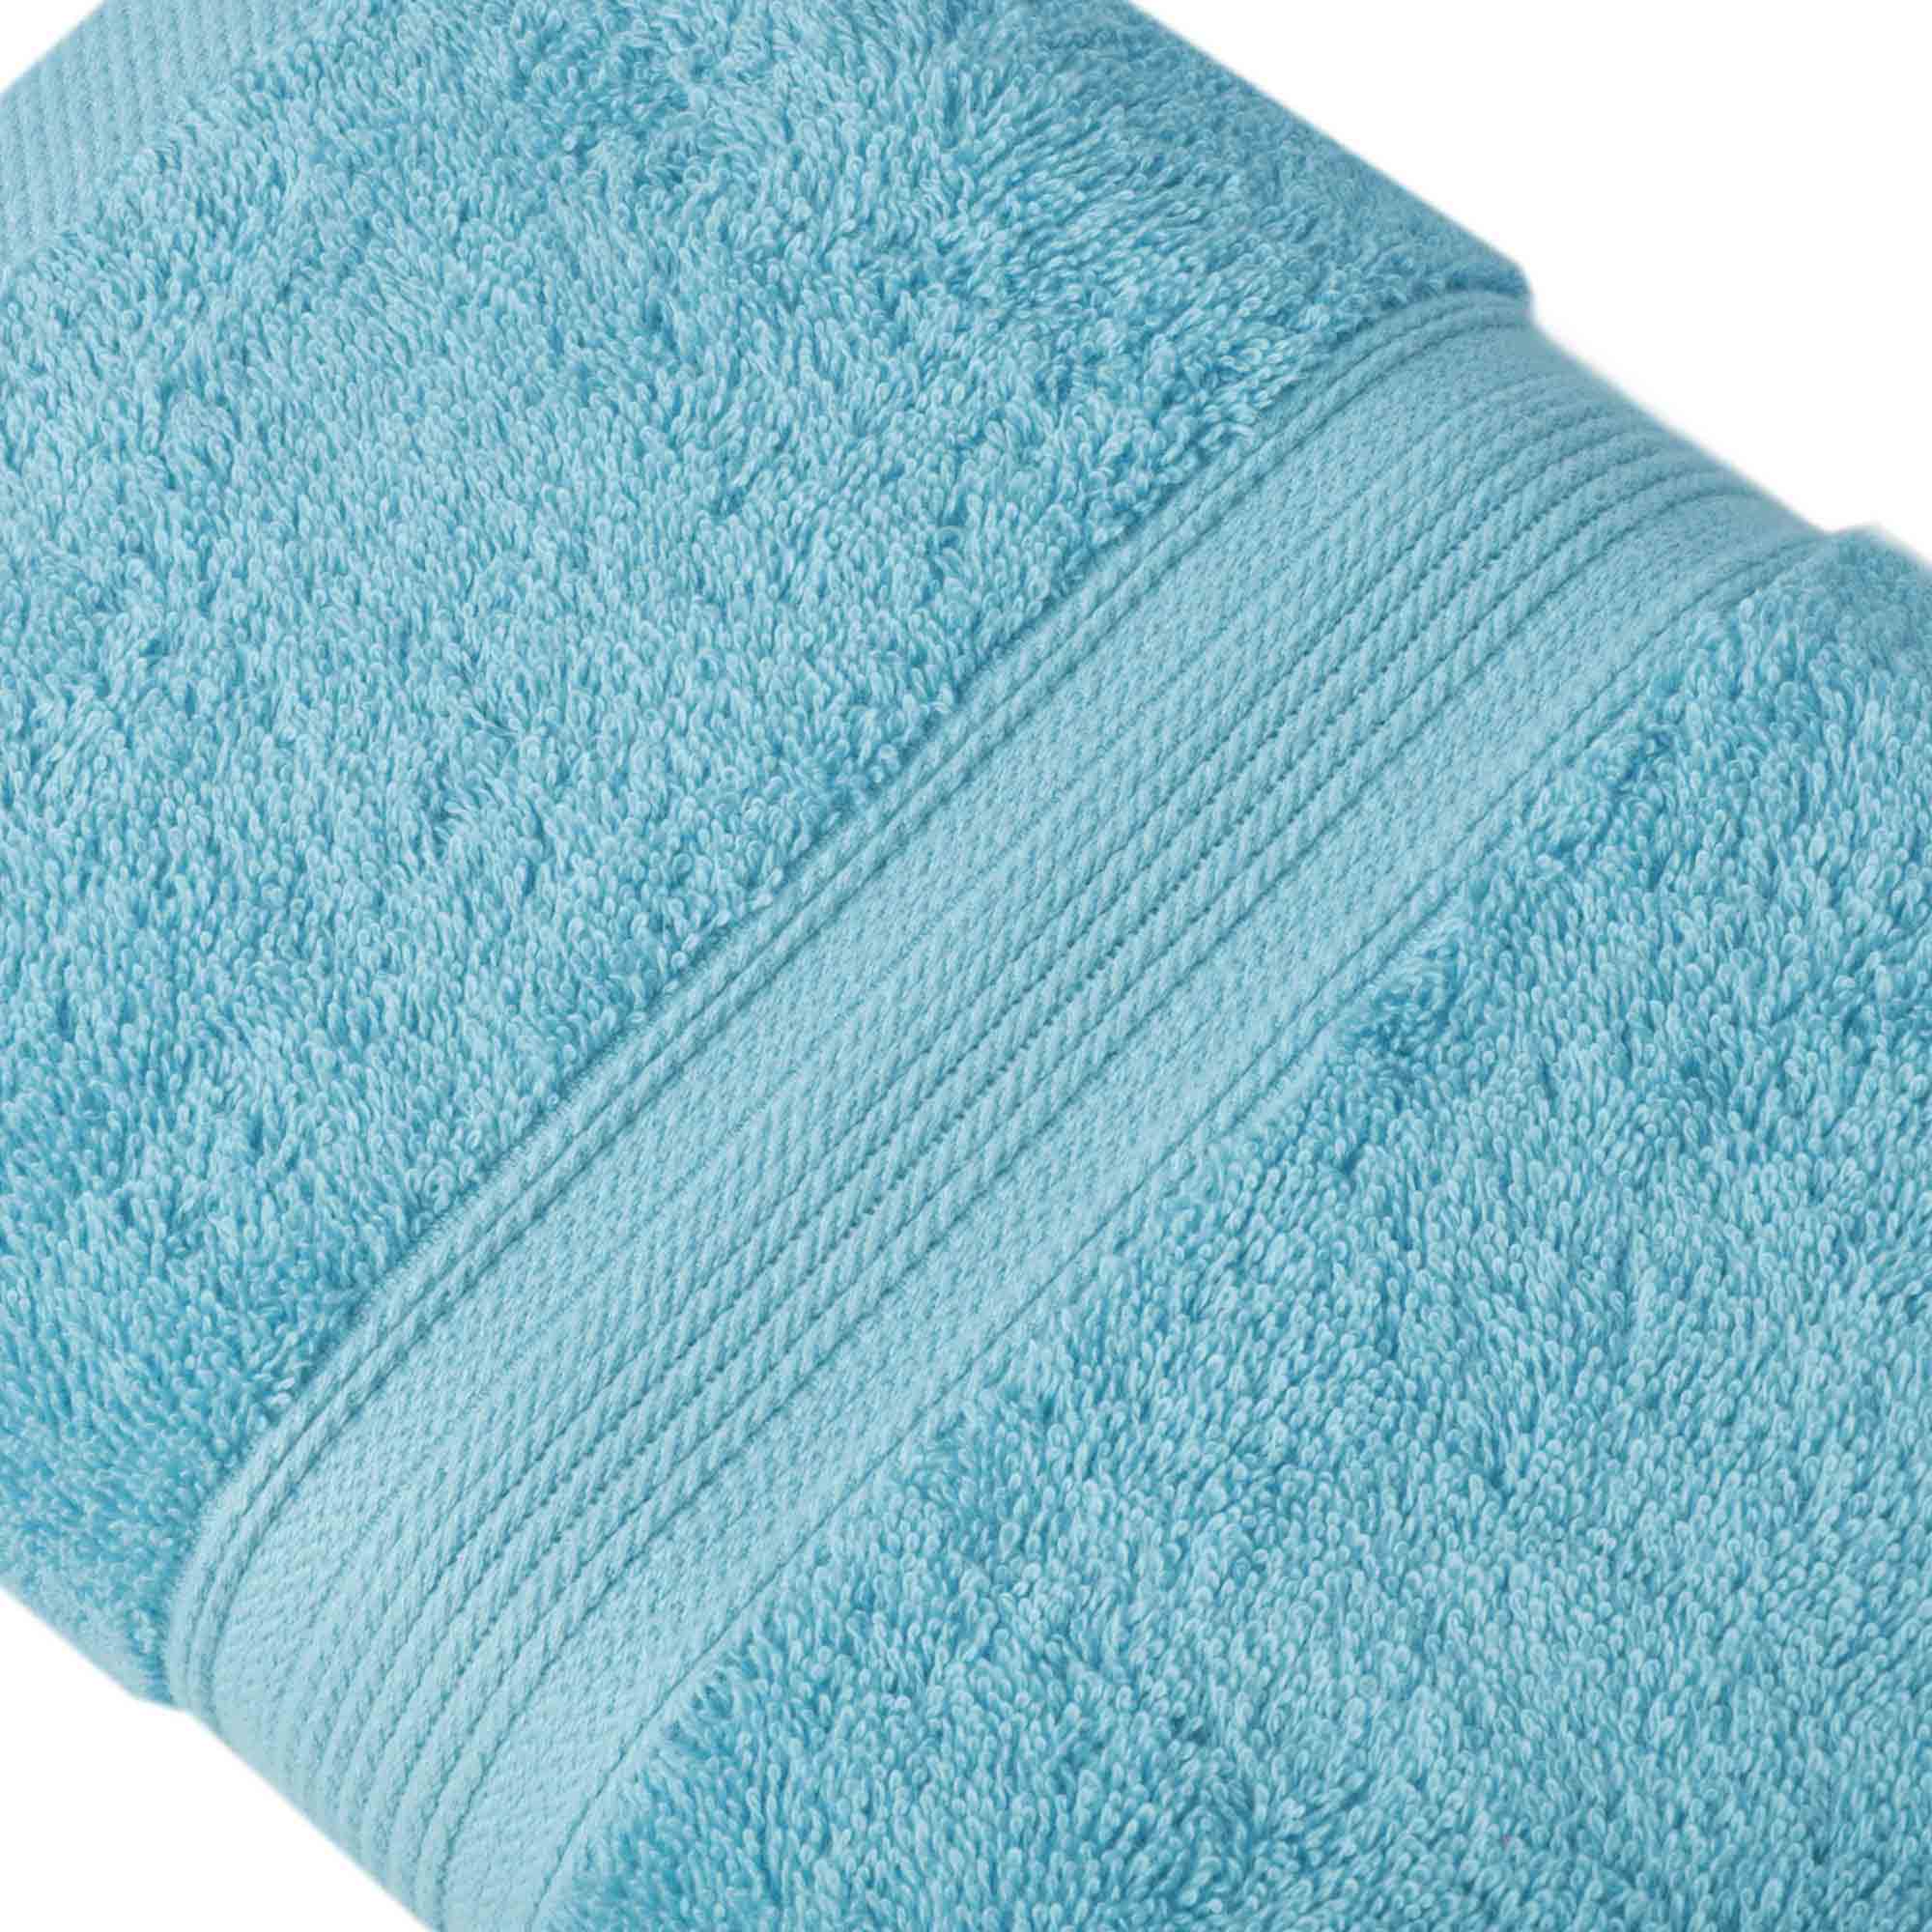 Bourgeois - 4 Piece Bath Towel Set